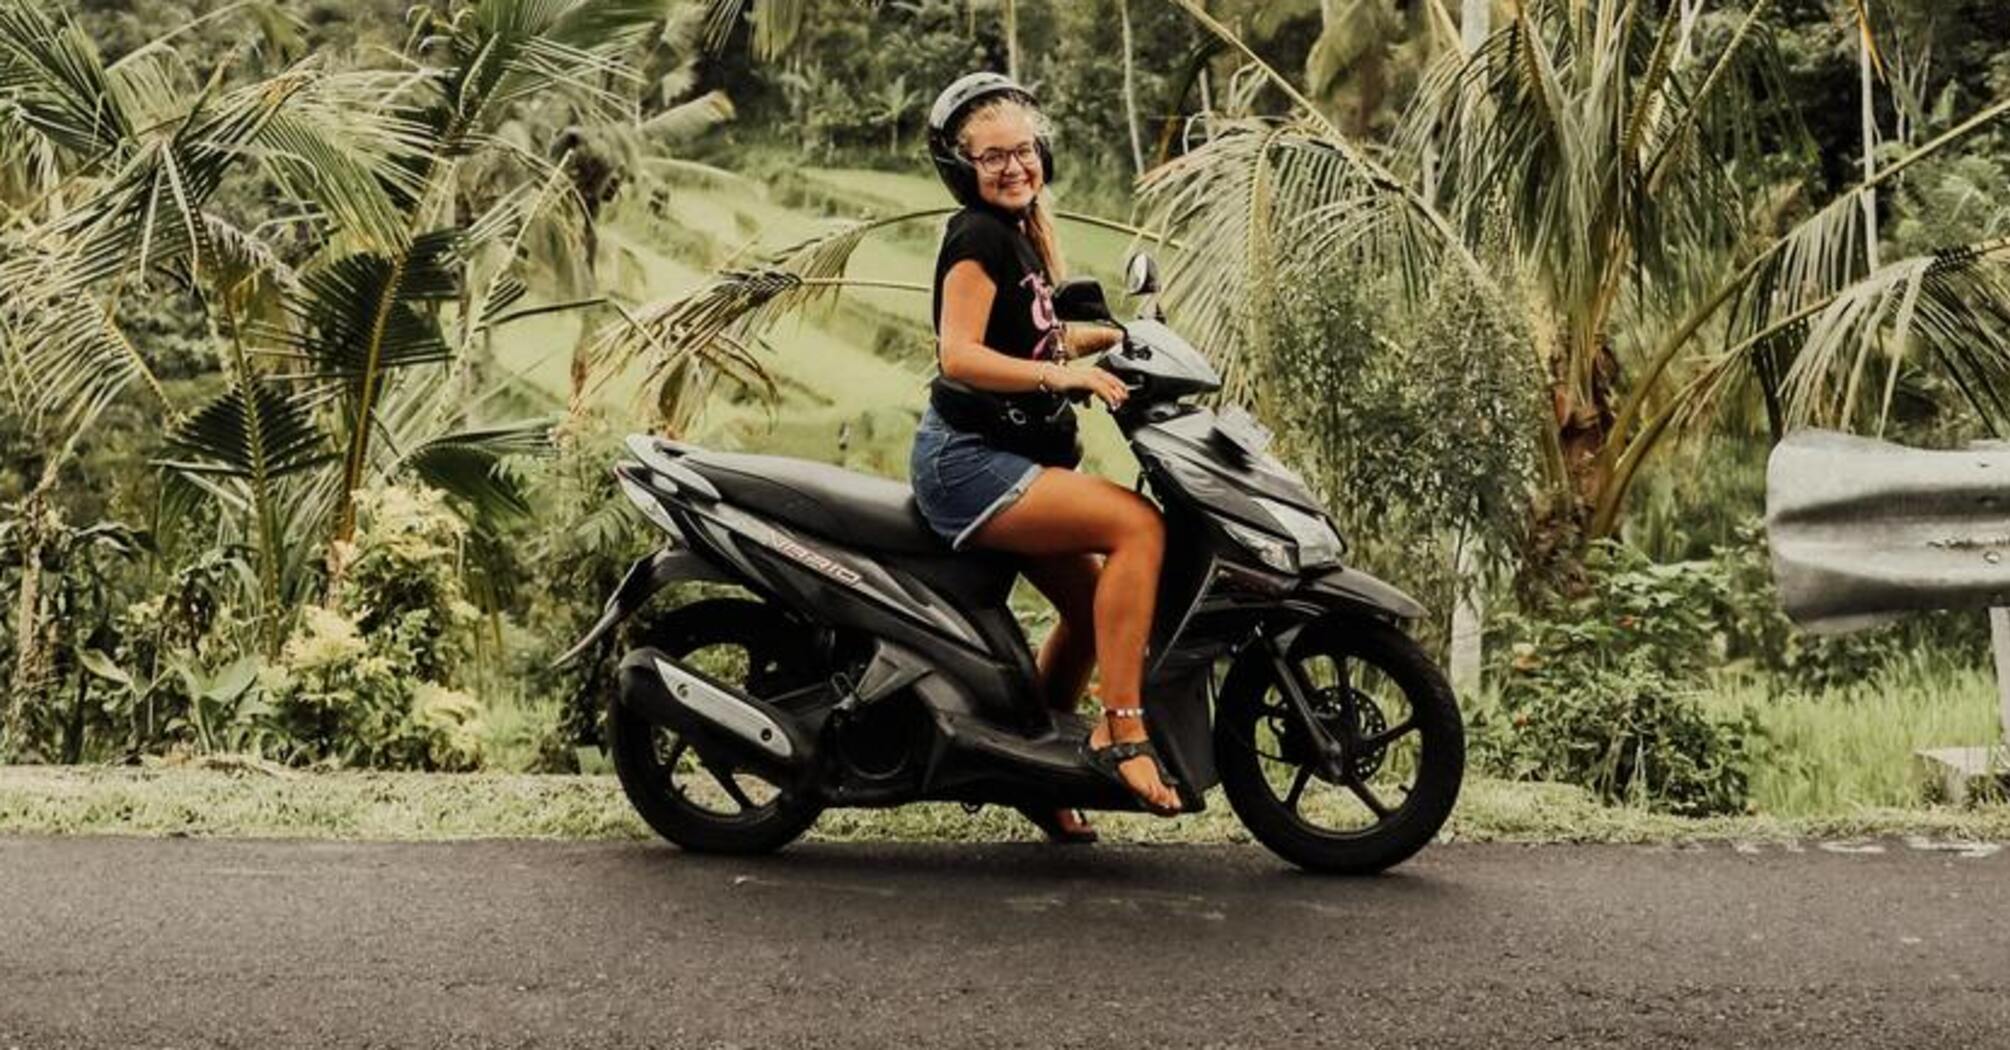 Bali wzywa rosyjskich turystów do 'skromniejszego ubierania się', ponieważ kobiety jeżdżące na skuterach w bikini rozpraszają kierowców